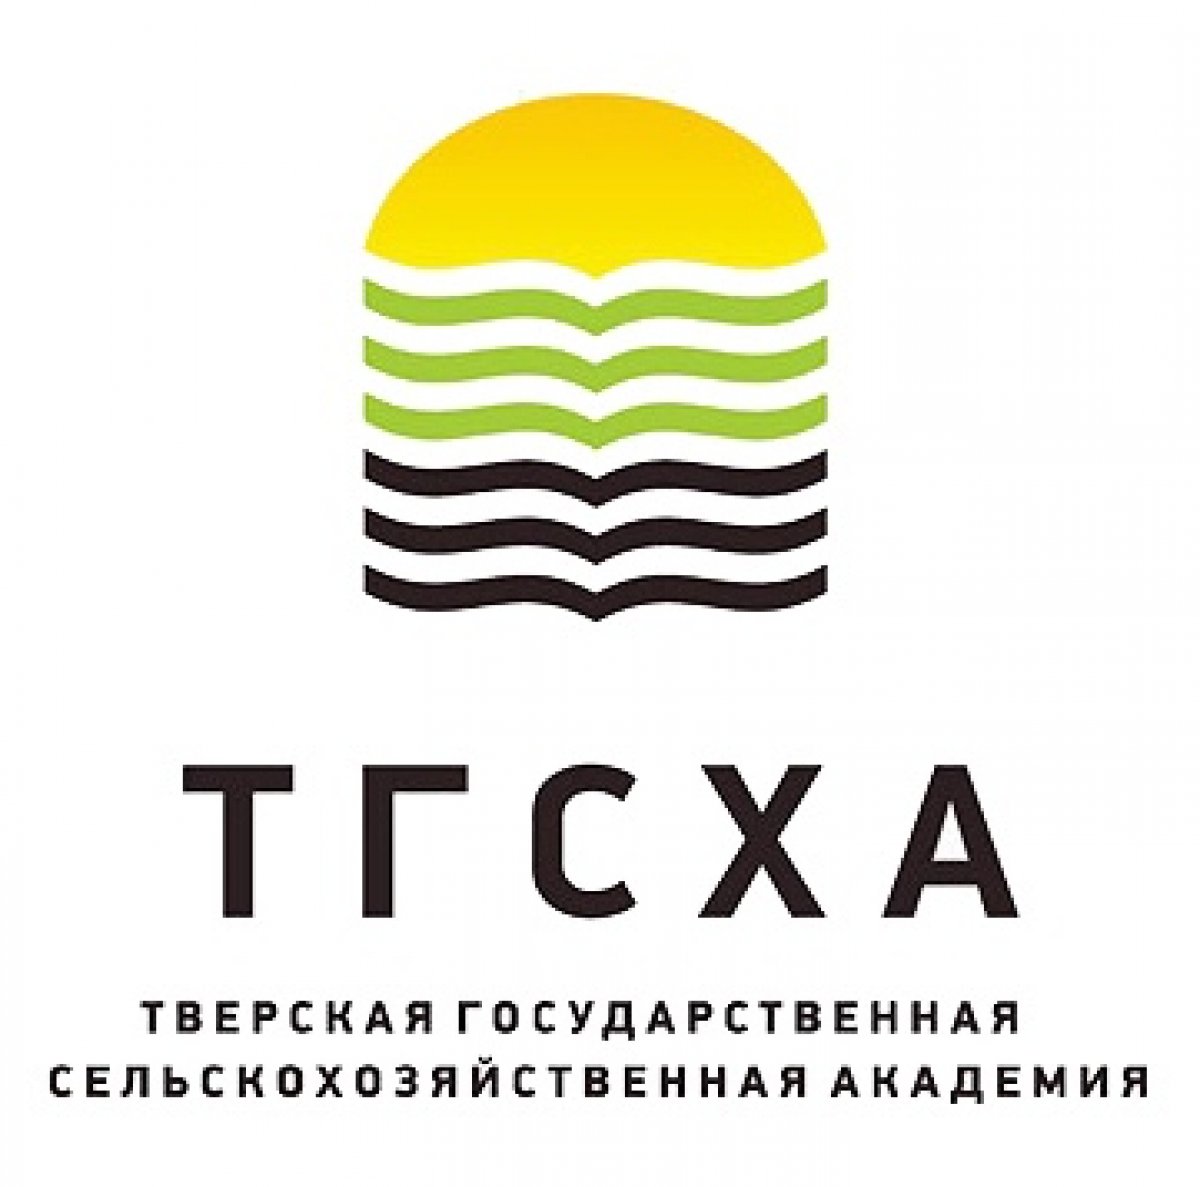 Логотип Тверская государственная сельскохозяйственная академия